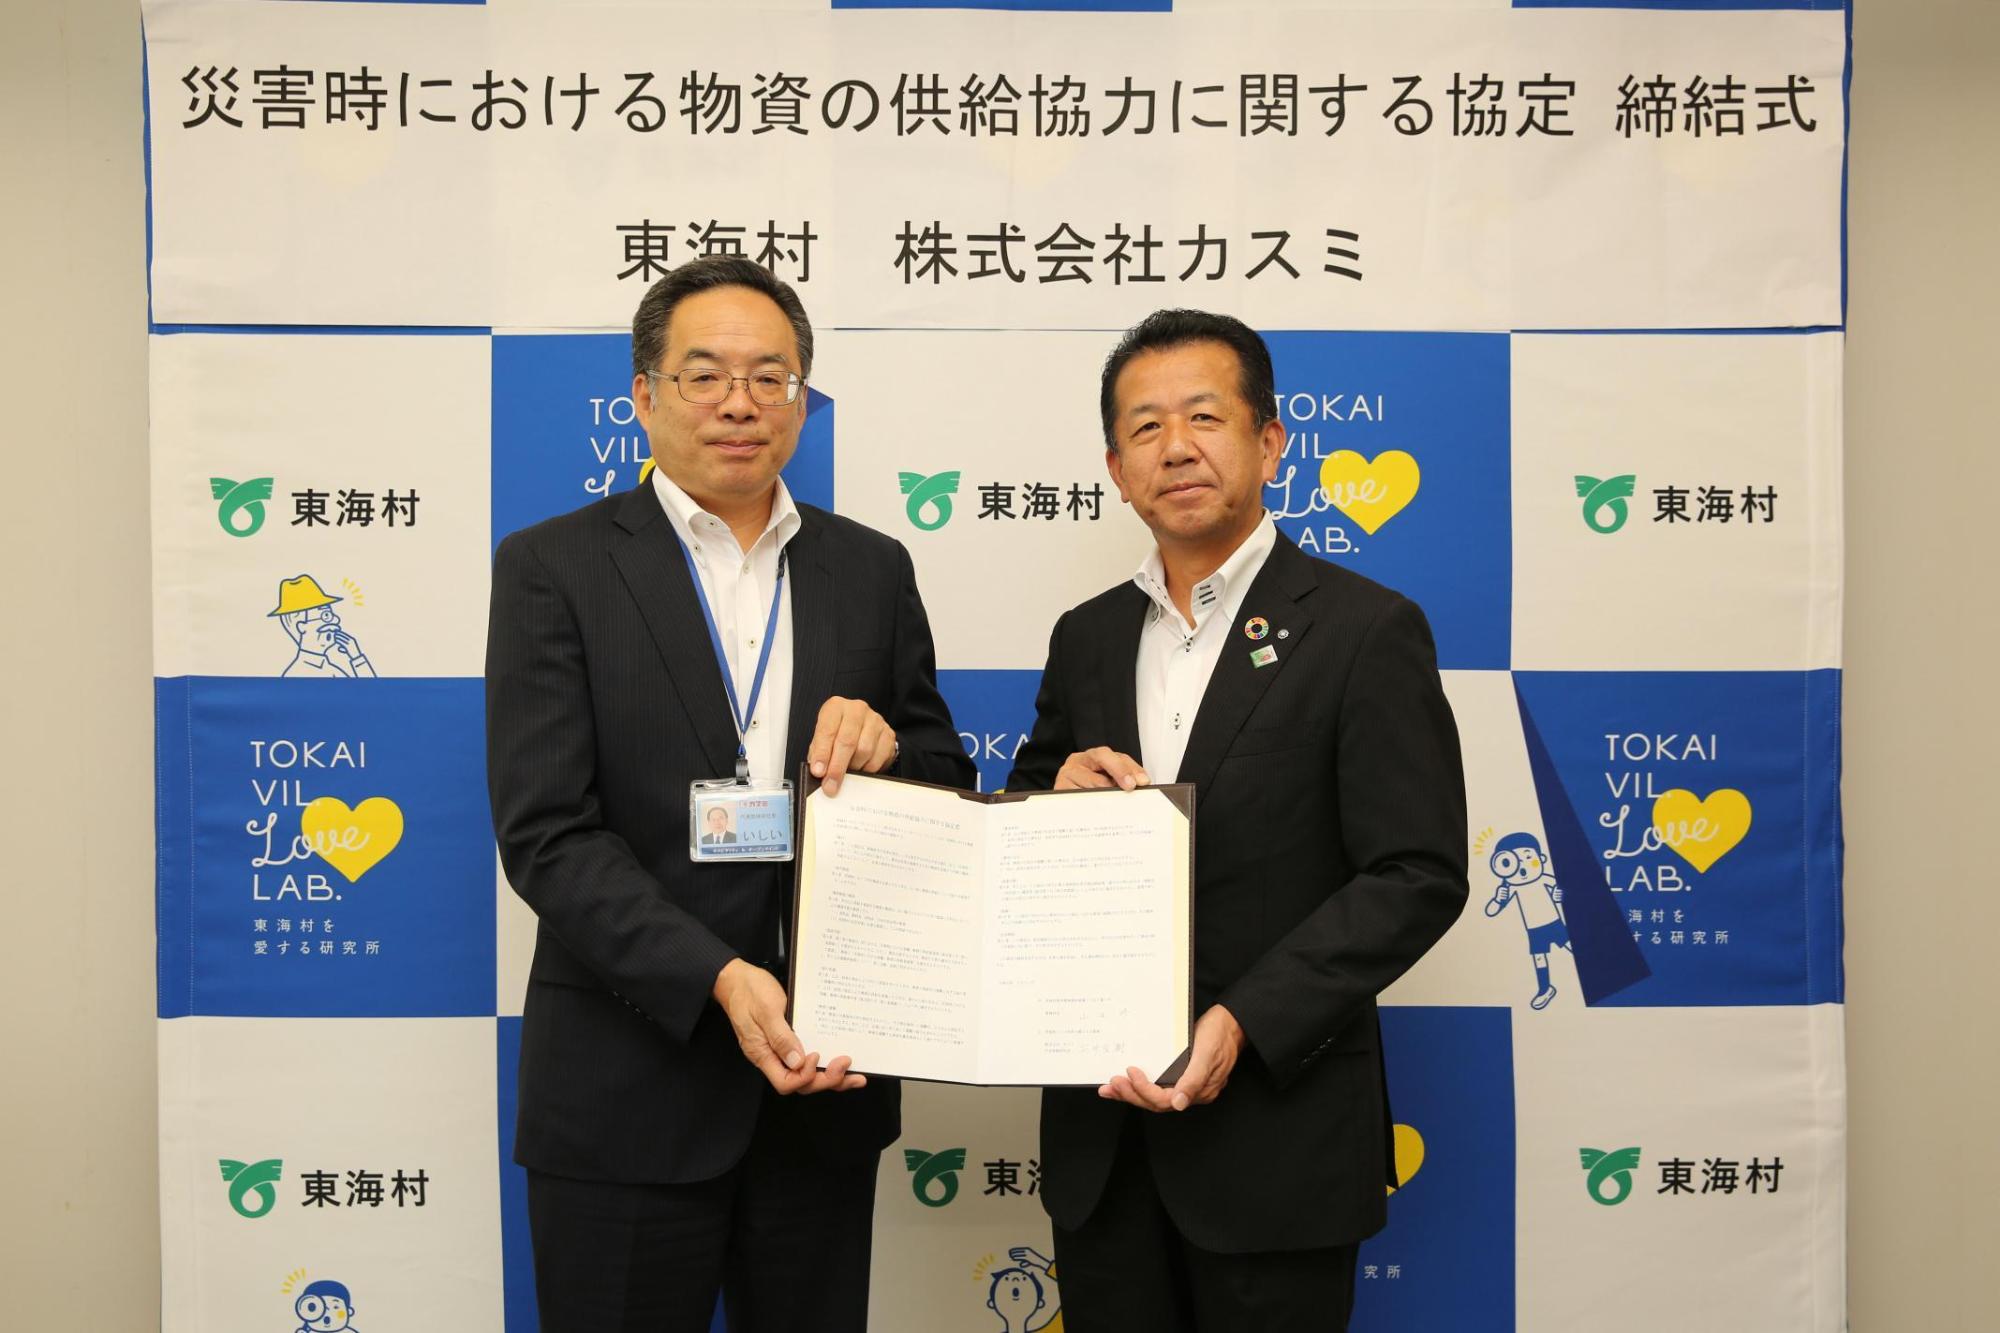 調印書を一緒に持って立っている石井社長と山田東海村長の写真